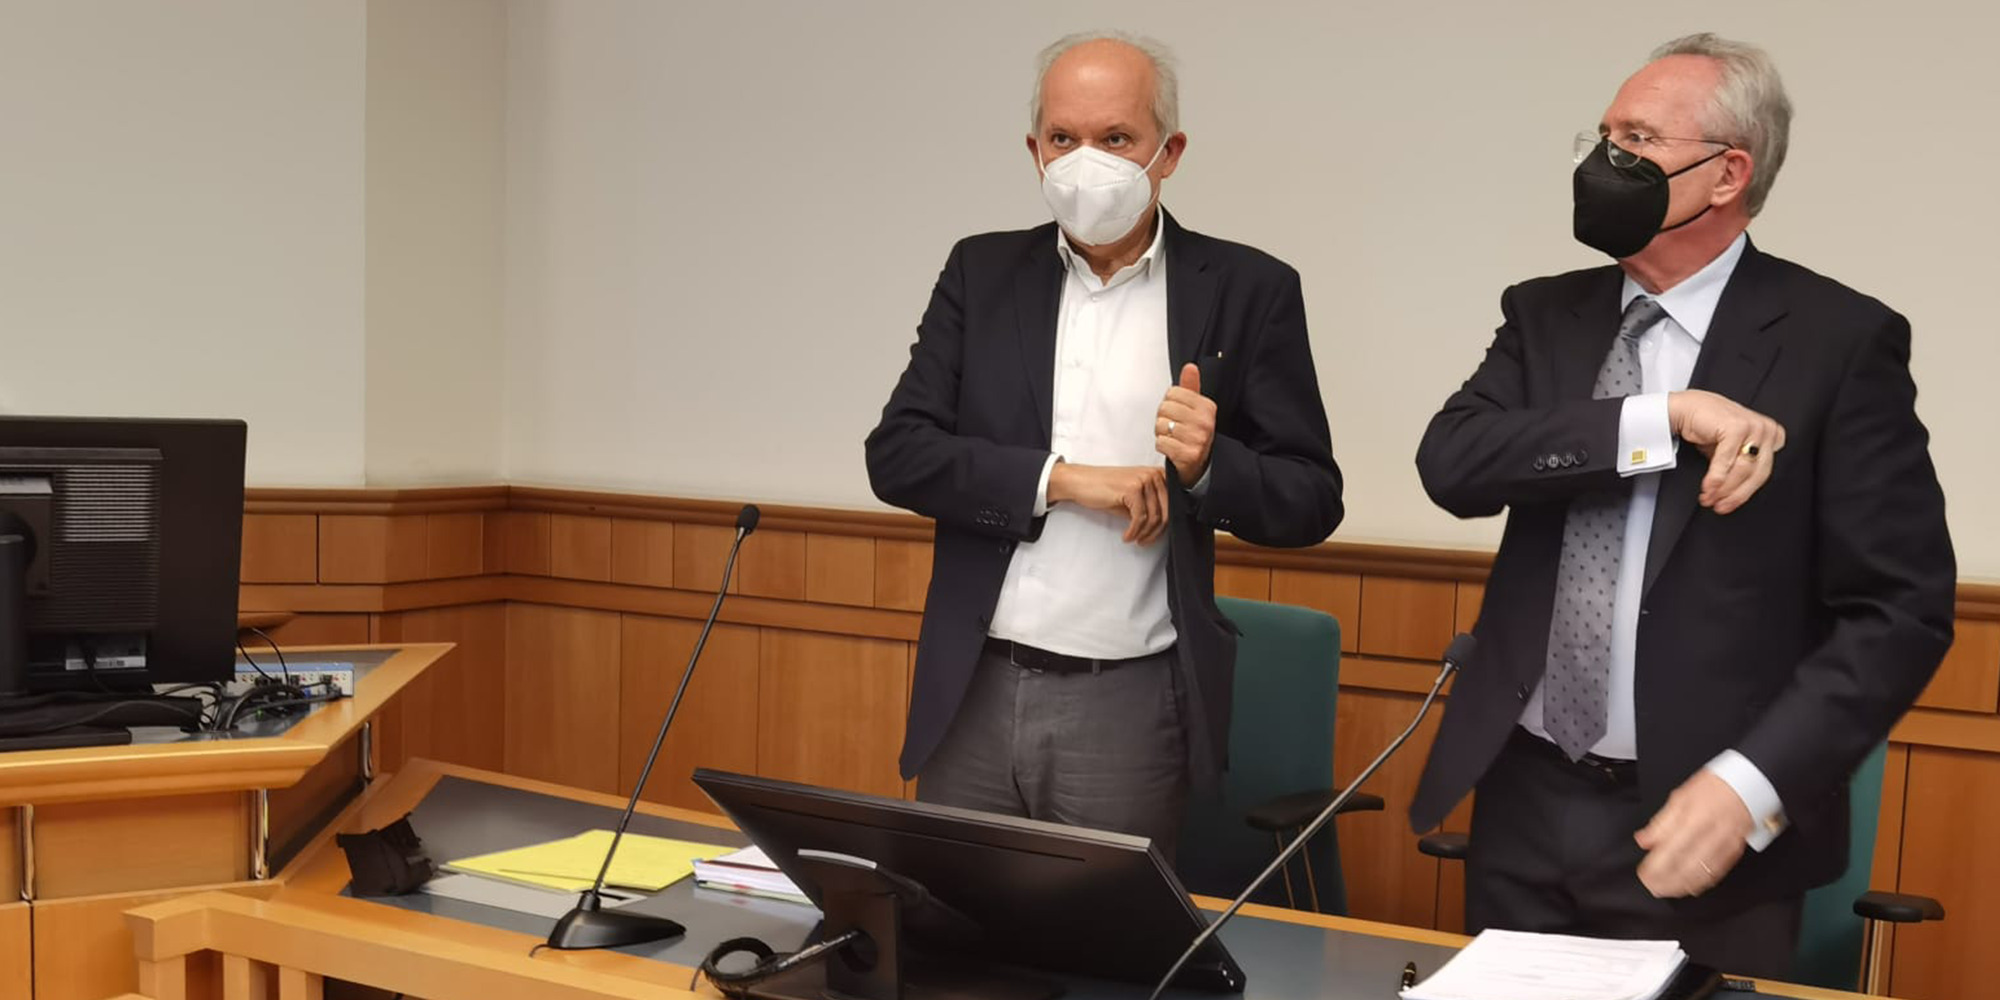 Anwalt Werner Suppan und ÖVP-Landesparteiobmann Karl Mahrer im Gerichtssaal.